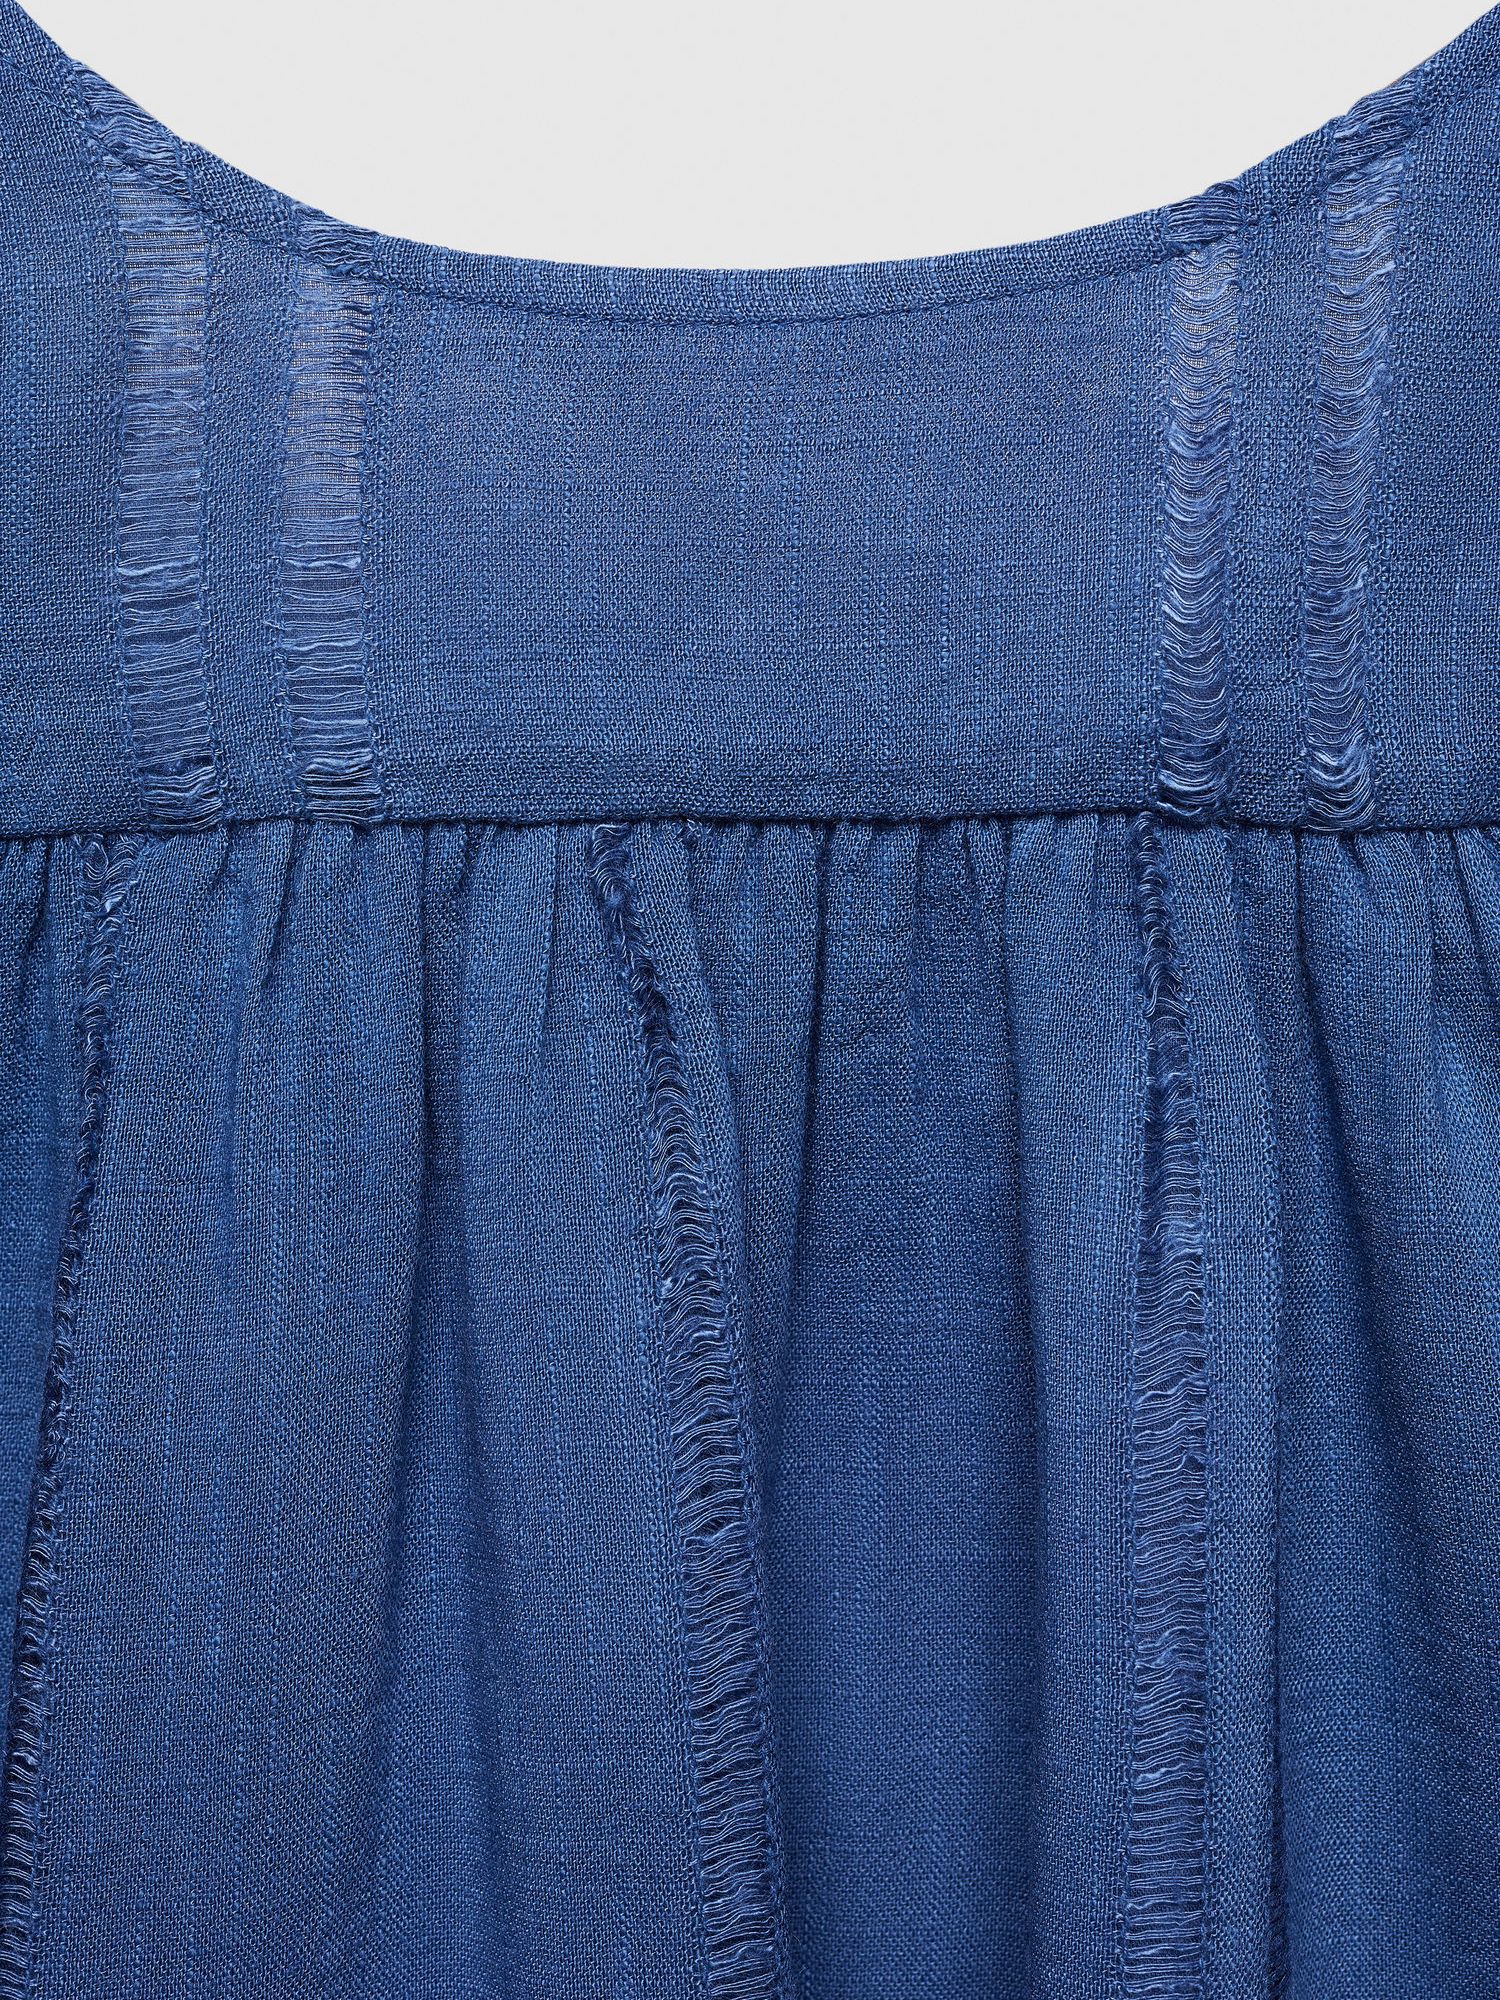 Mango Kids' Golfet Ruffle Slit Dress, Blue, 10 years